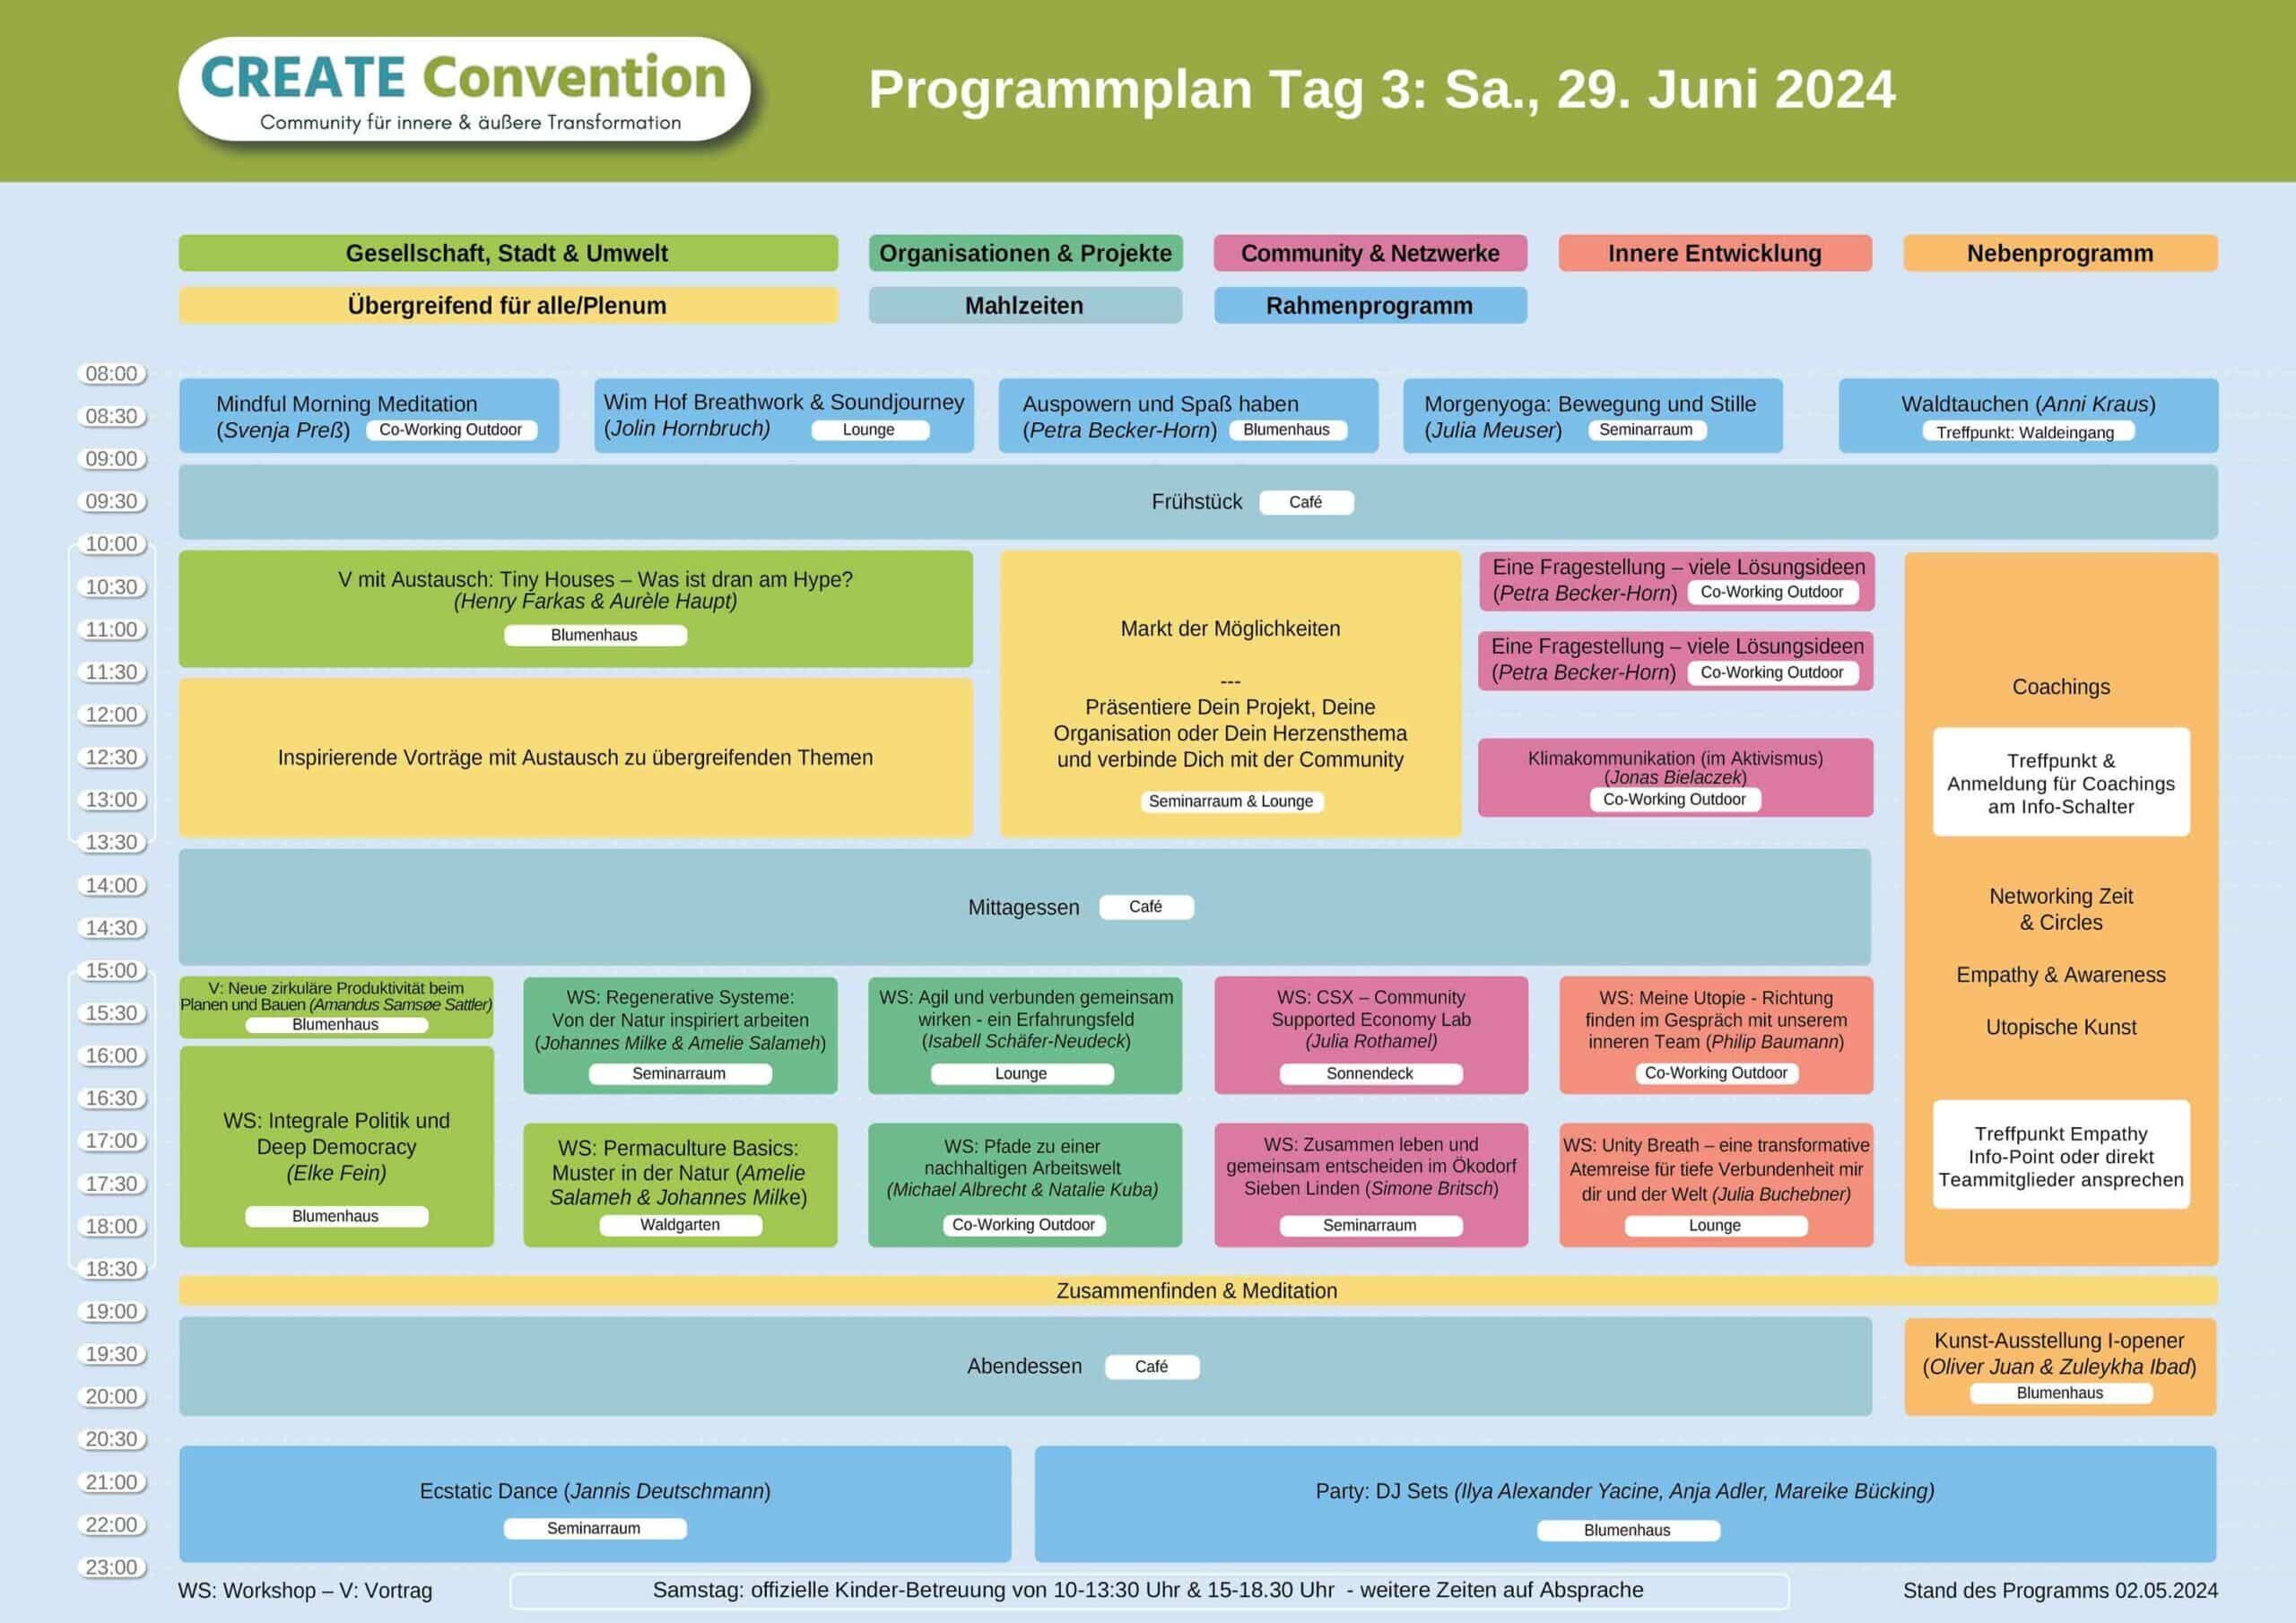 CREATE Convention 2024 Prorgamm Tag 3